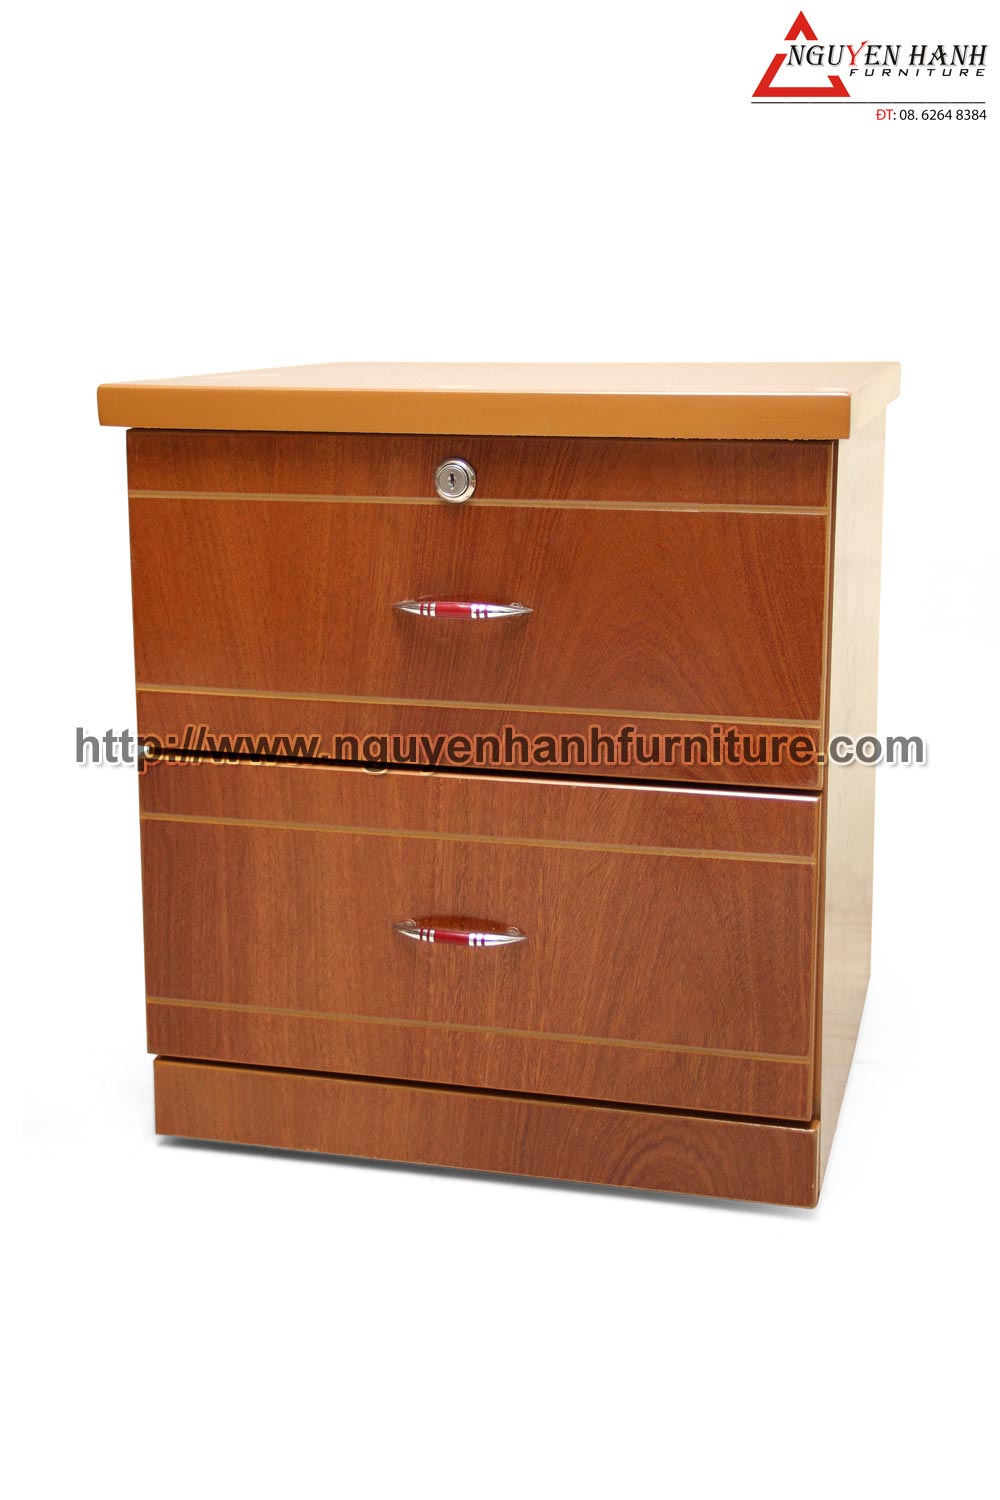 Name product: Headboard Cabinet of Veneer Bead tree wood- Dimensions: 44 x 44 x 48cm - Description: Veneer bead tree wood